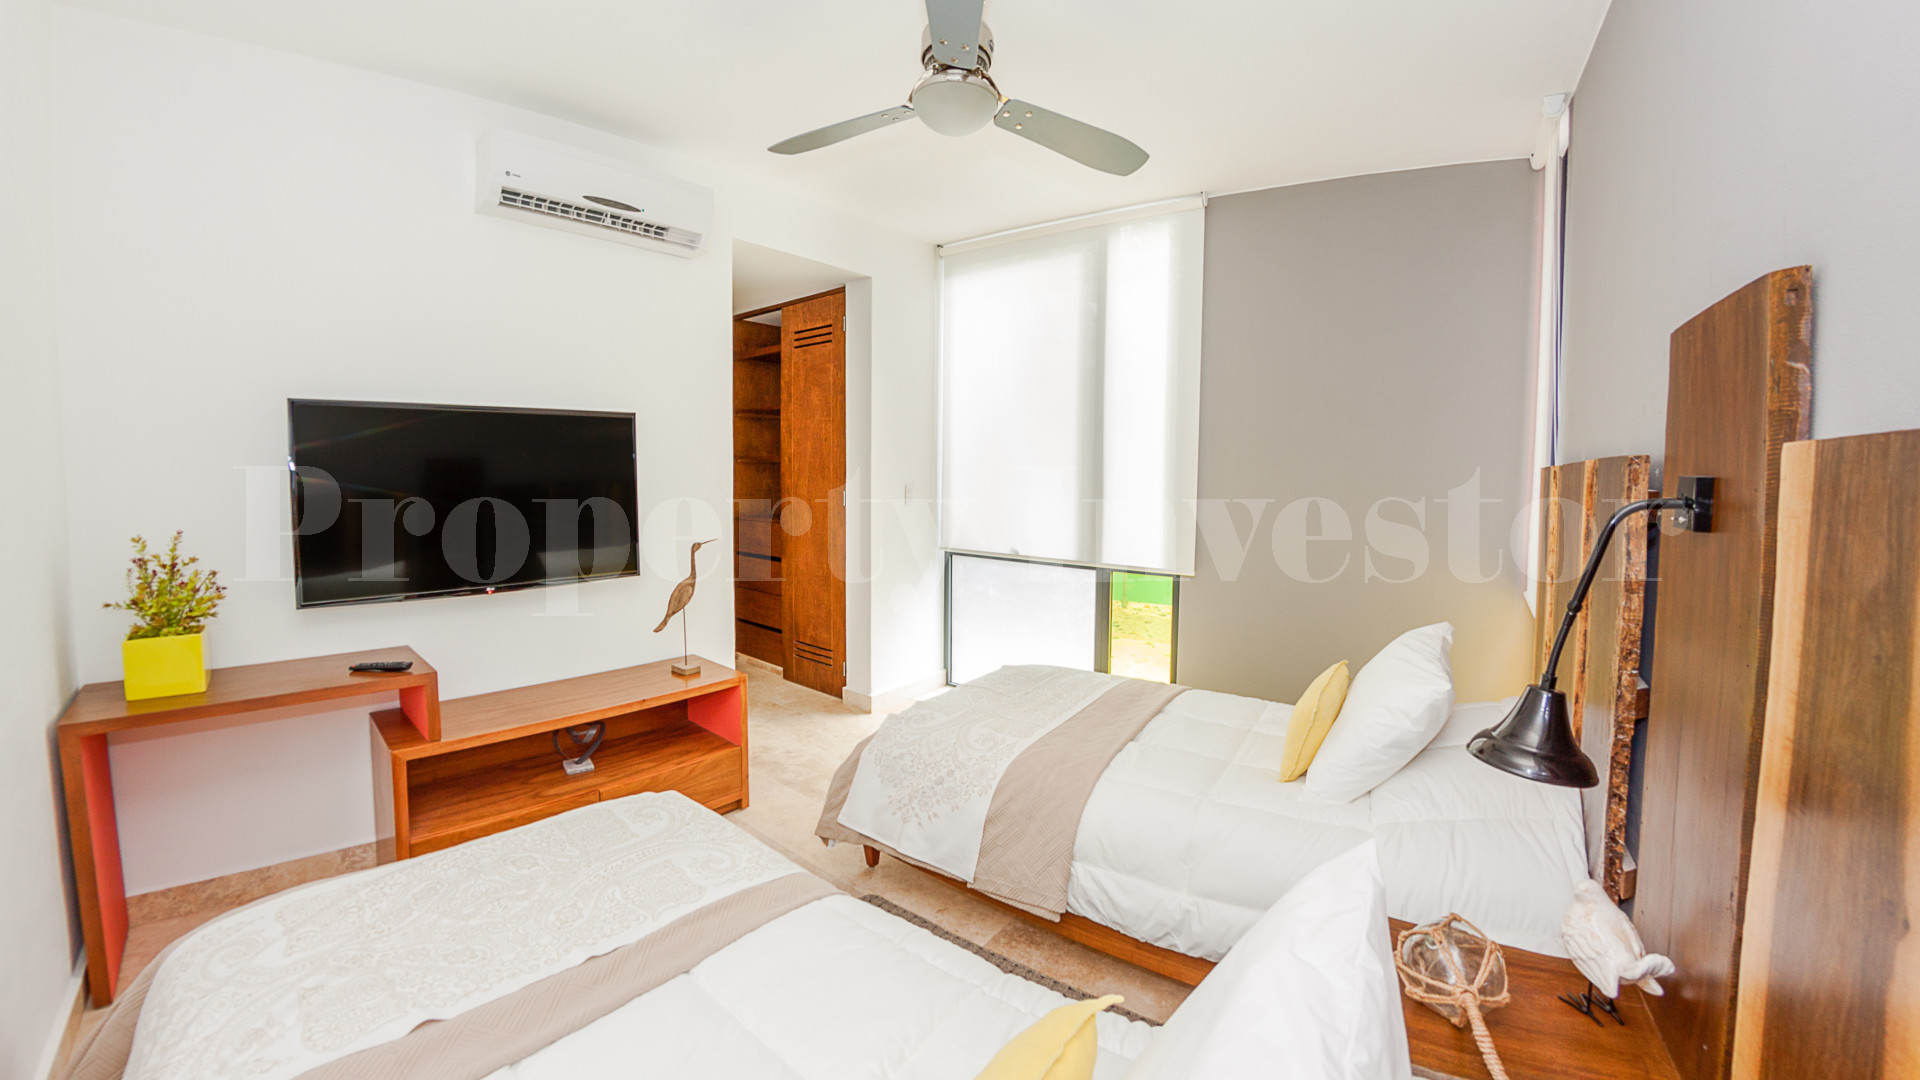 2 Bedroom Boutique Apartment in Tulum (Unit 103)